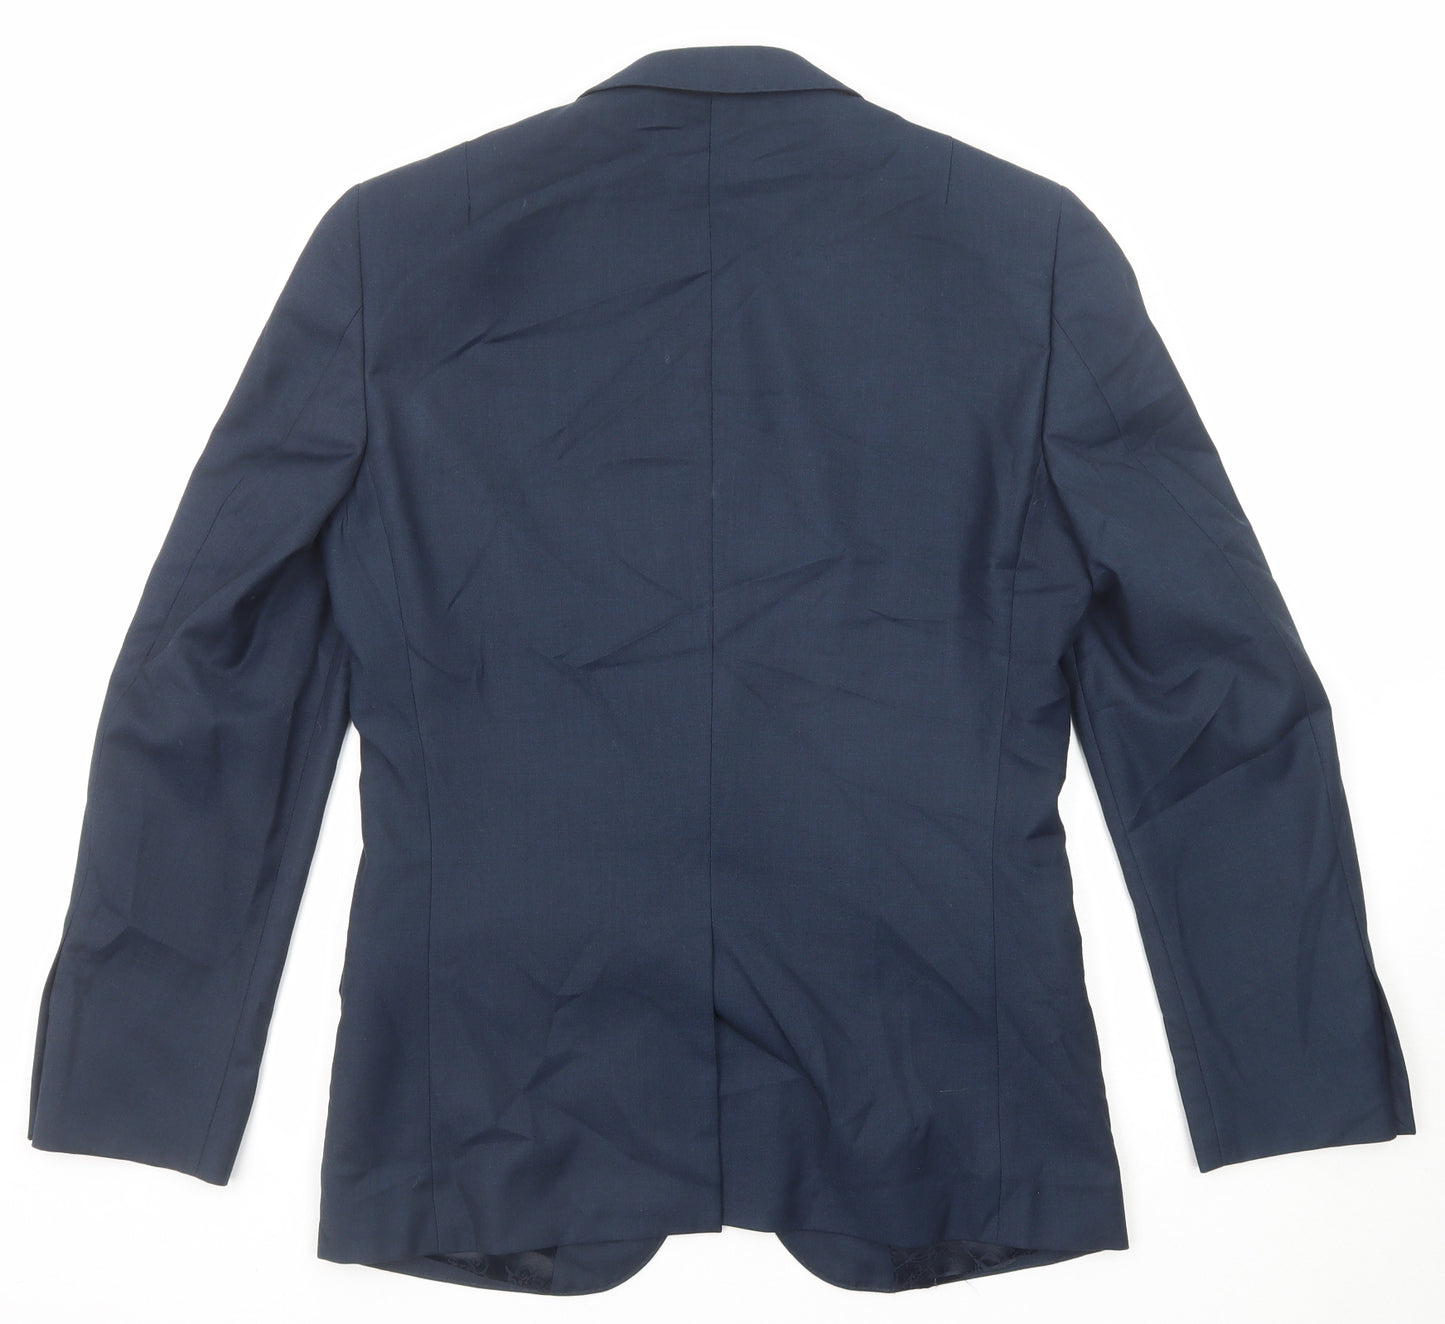 Harry Brown Mens Blue Polyester Jacket Suit Jacket Size 36 Regular